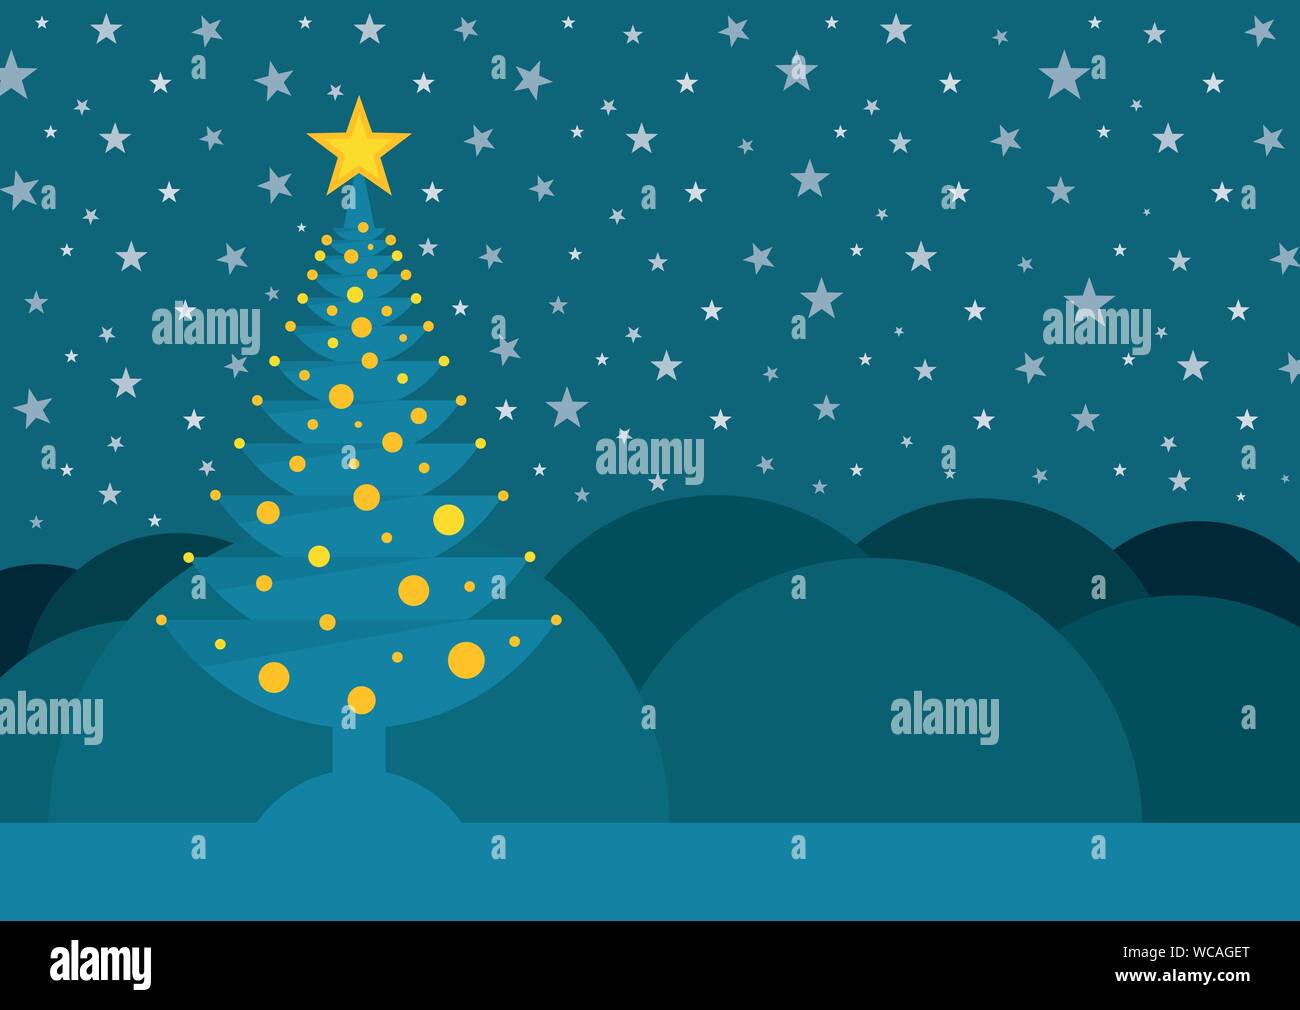 Blue albero di Natale con una stella sulla punta adornata con cerchi gialli su uno sfondo di montagne e un cielo pieno di stelle. Immagine vettoriale Illustrazione Vettoriale